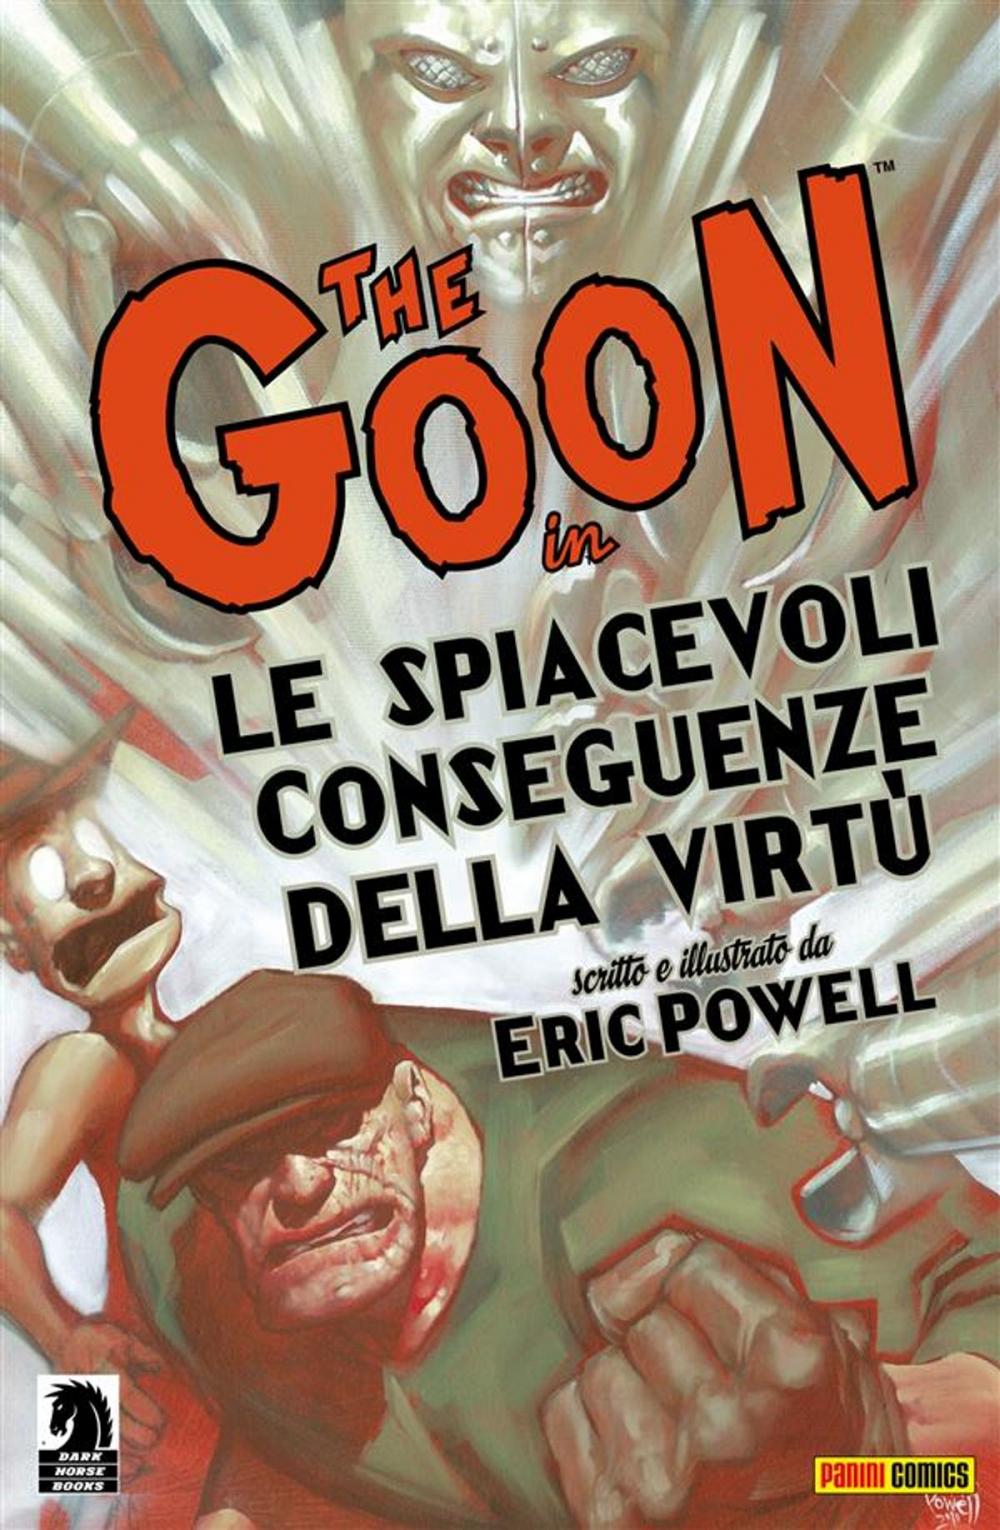 Big bigCover of The Goon volume 4: Le spiacevoli conseguenze della virtù (Collection)